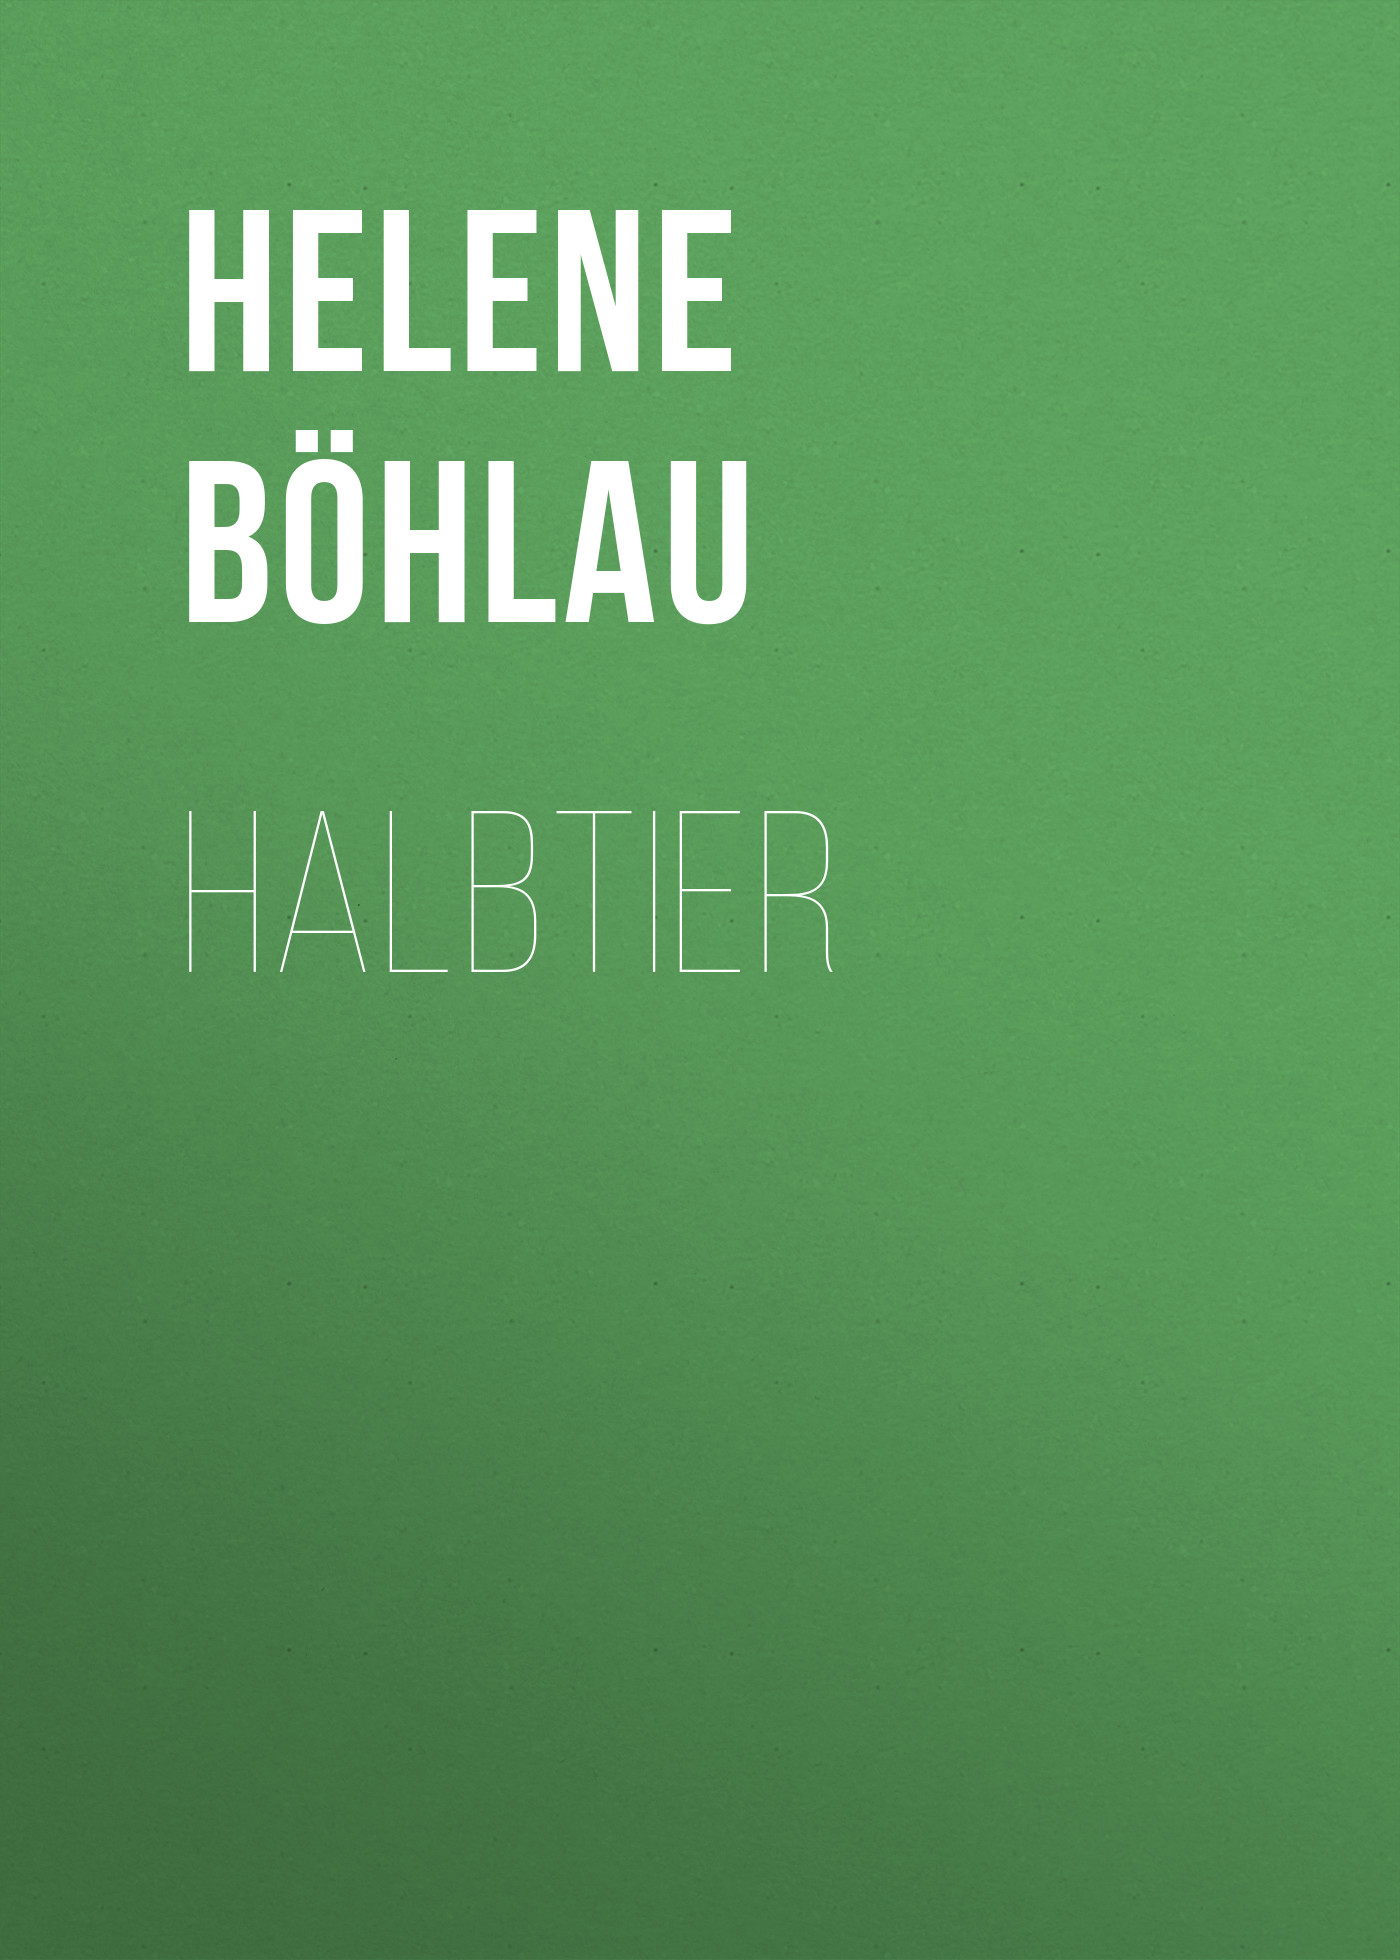 Книга Halbtier из серии , созданная Helene Böhlau, может относится к жанру Зарубежная старинная литература, Зарубежная классика. Стоимость электронной книги Halbtier с идентификатором 24179092 составляет 0 руб.